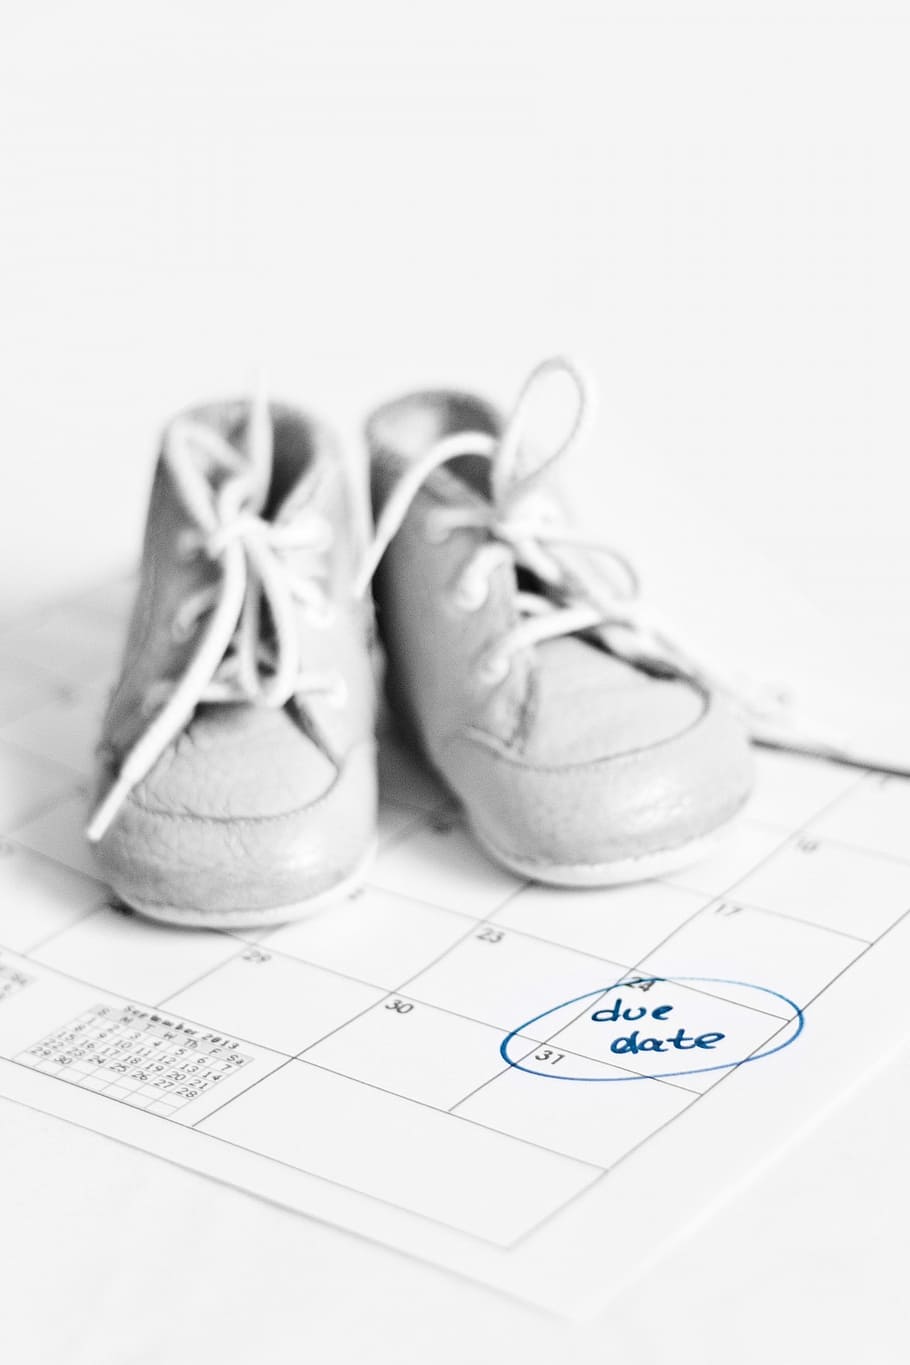 Gris, zapatos con cordones de cuero, blanco, planificador, debido, fecha, calendario, embarazada, embarazo, esperando